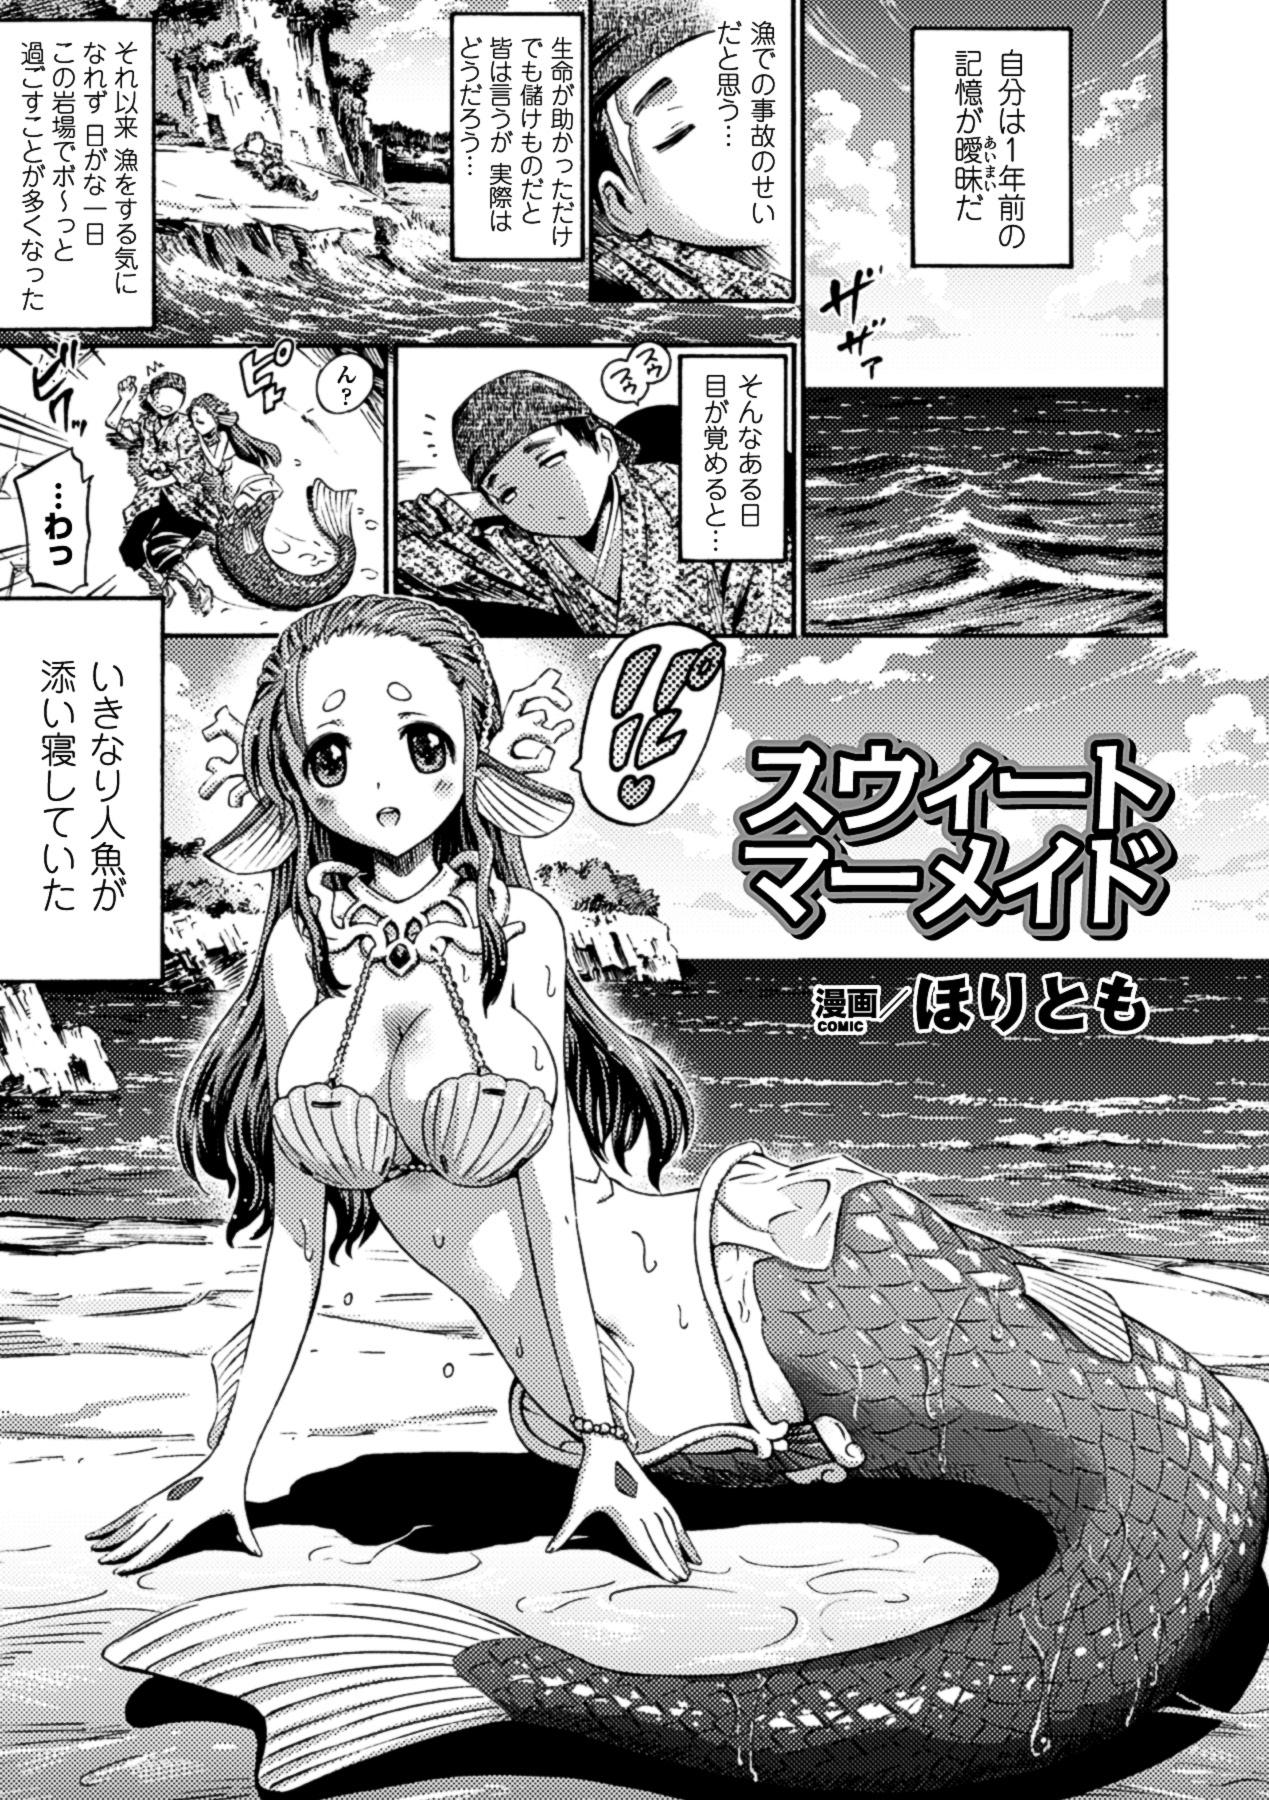 Bessatsu Comic Unreal Monster Musume Paradise Digital Ban Vol. 3 22